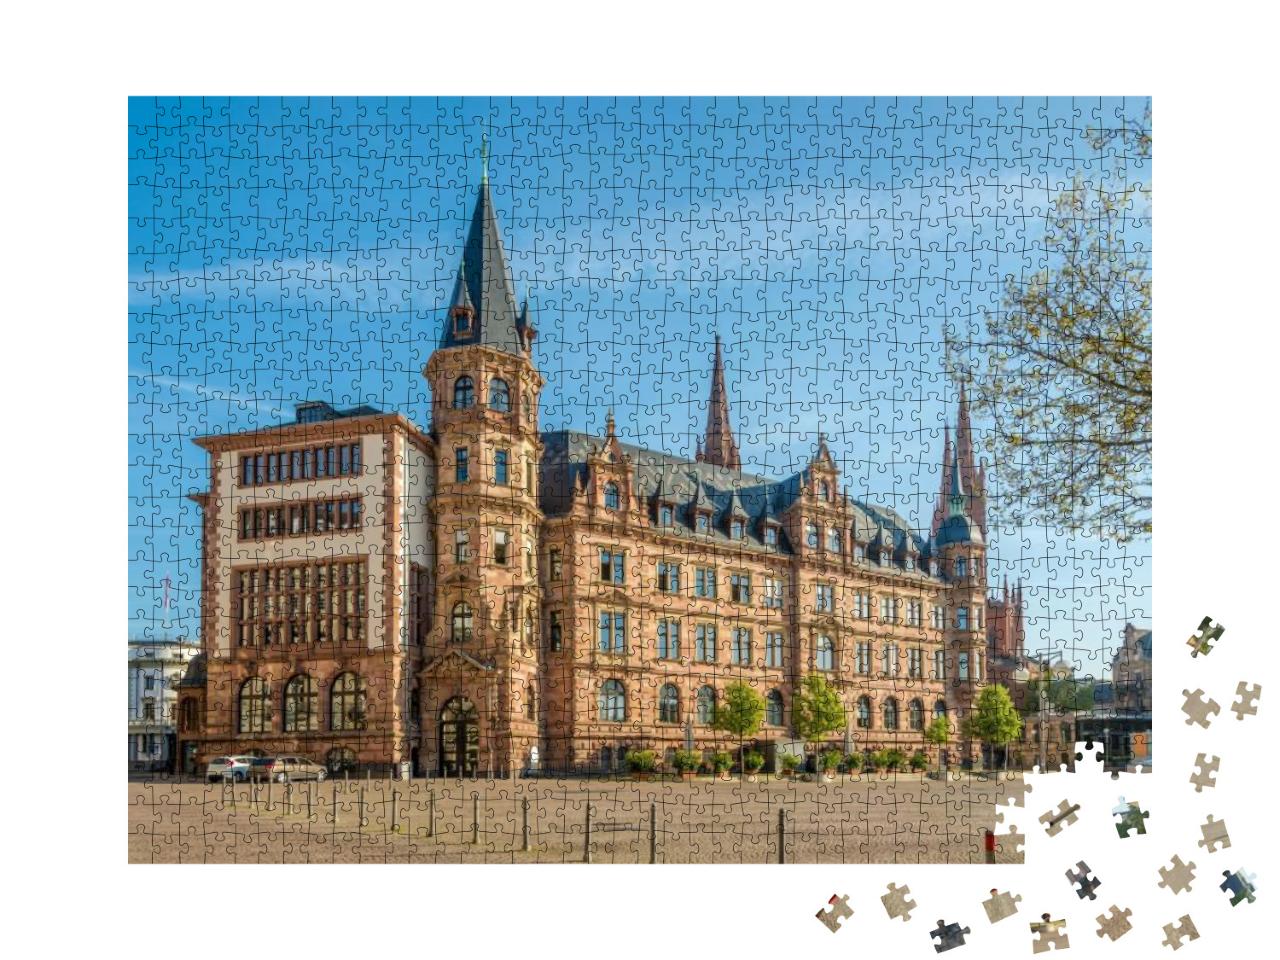 Puzzle 1000 Teile „Stadthalle am Marktplatz in Wiesbaden, Deutschland“